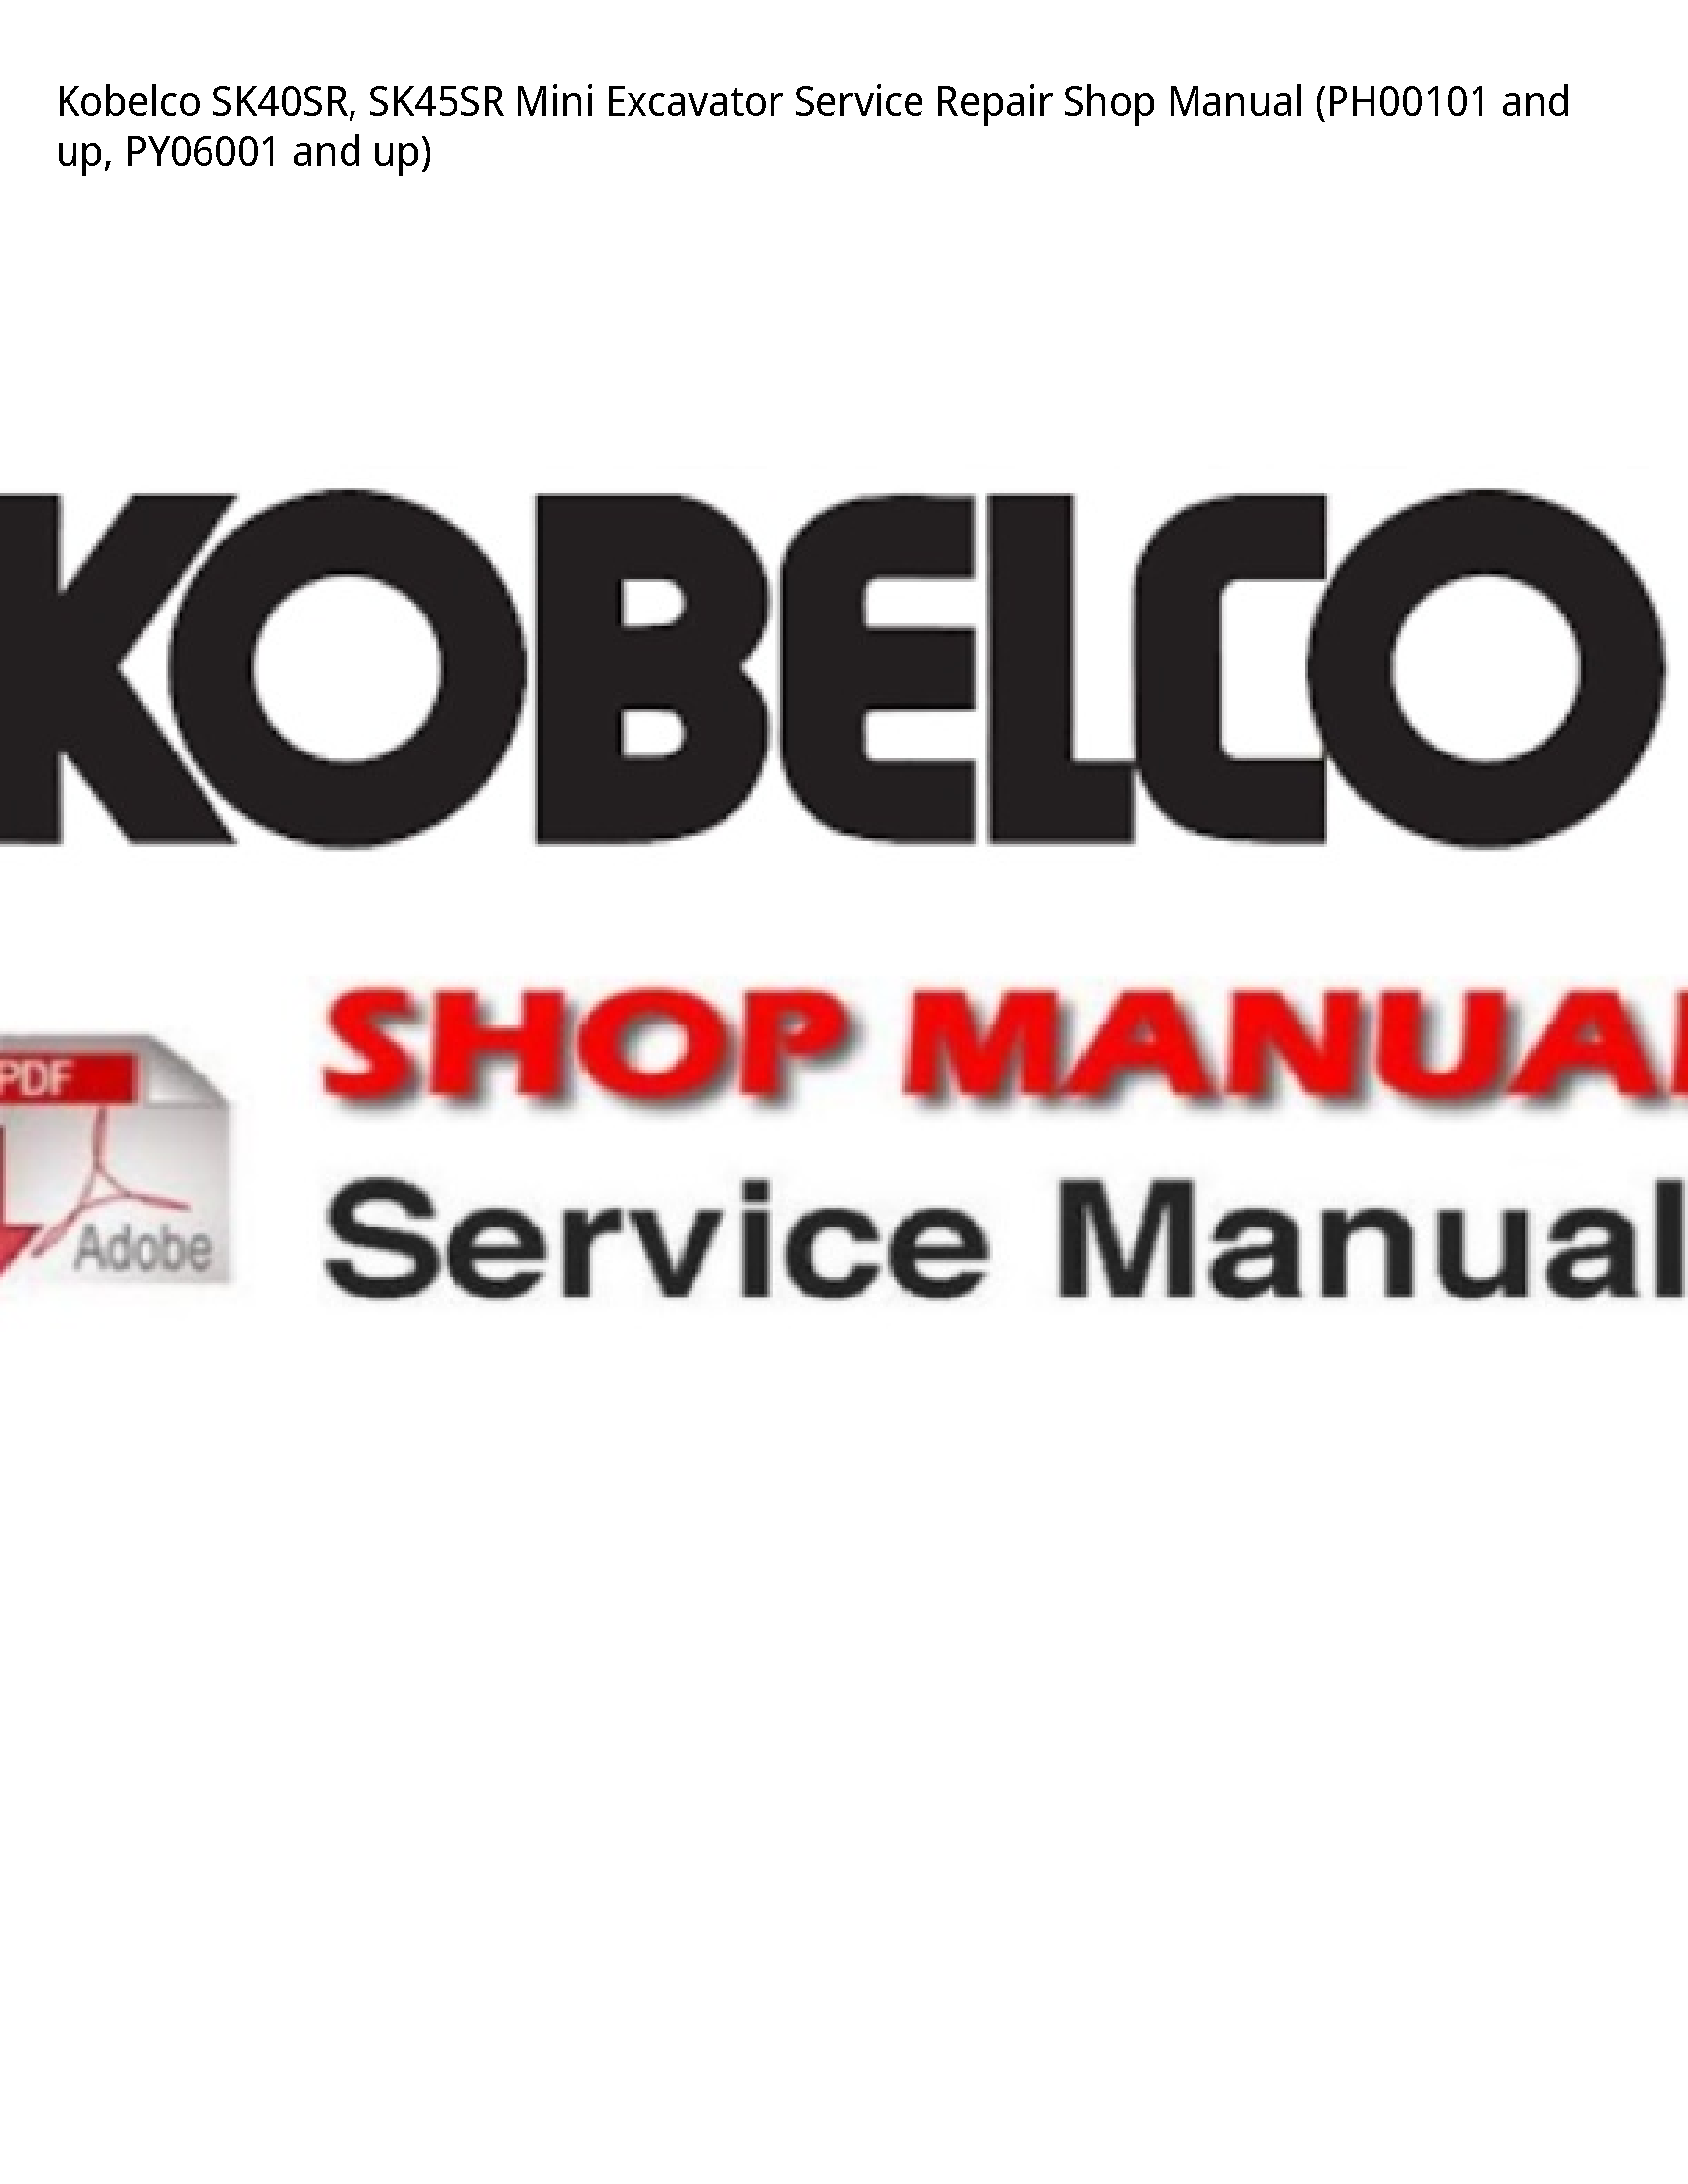 Kobelco SK40SR Mini Excavator manual